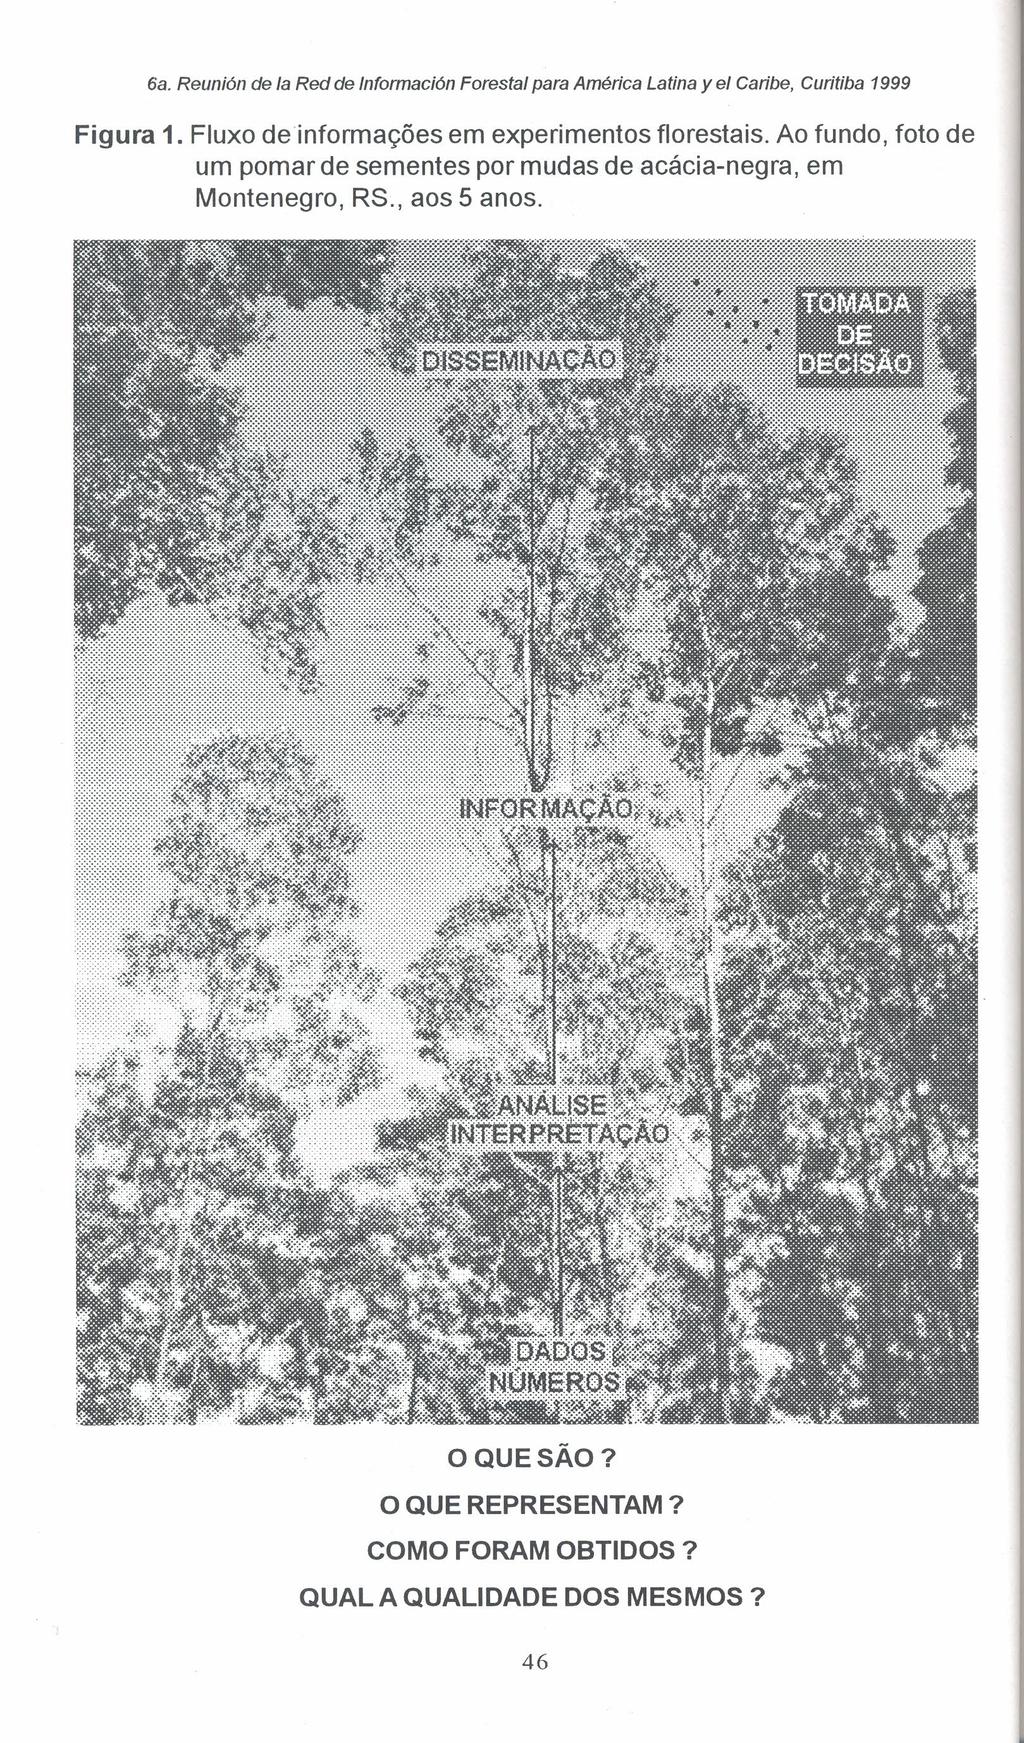 6a. Reuni6n de Ia Red de tntormecion Forestal para América Latina yel Caribe, Curitiba 1999 Figura 1. Fluxo deinformações em experimentos florestais.